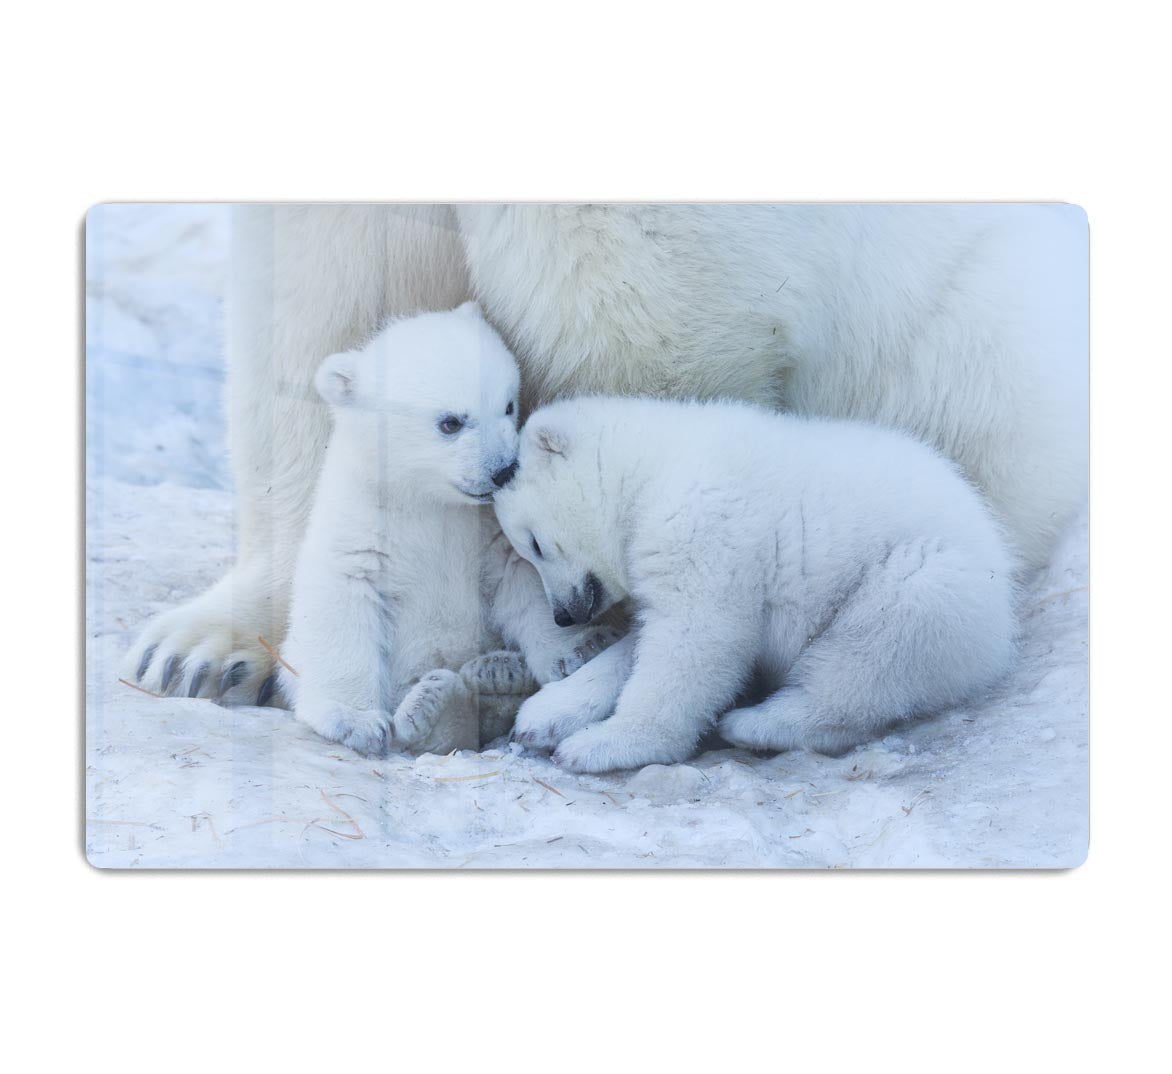 Polar bear cub Acrylic Block - 1x - 1